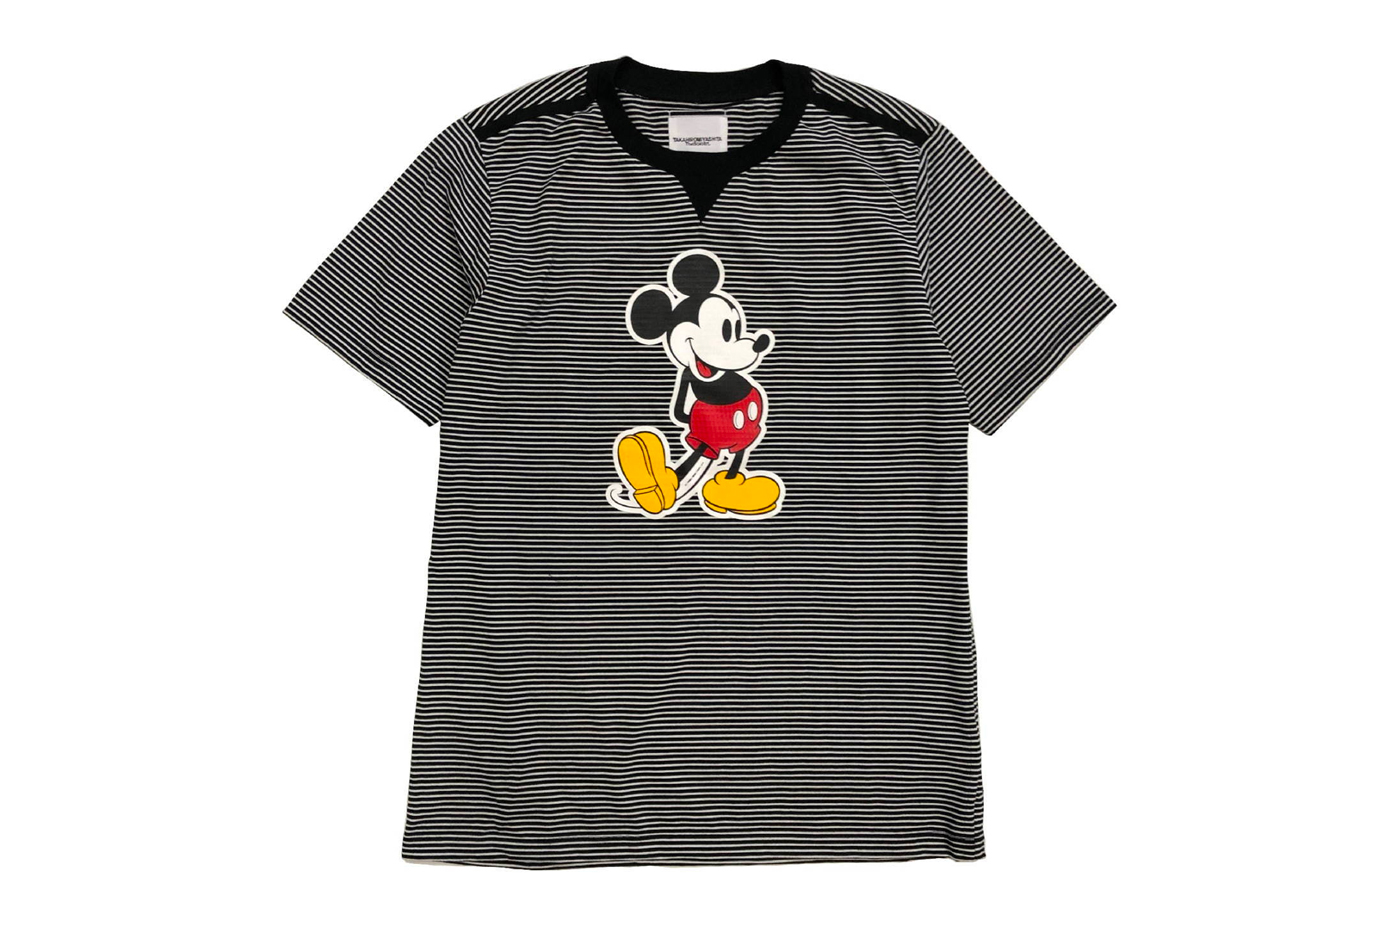 TAKAHIROMIYASHITATheSoloist Mickey Mouse T Shirt menswear streetwear spring summer 2020 collection japanese designer disney print stripes shinjuku isetan tokyo graphic tee